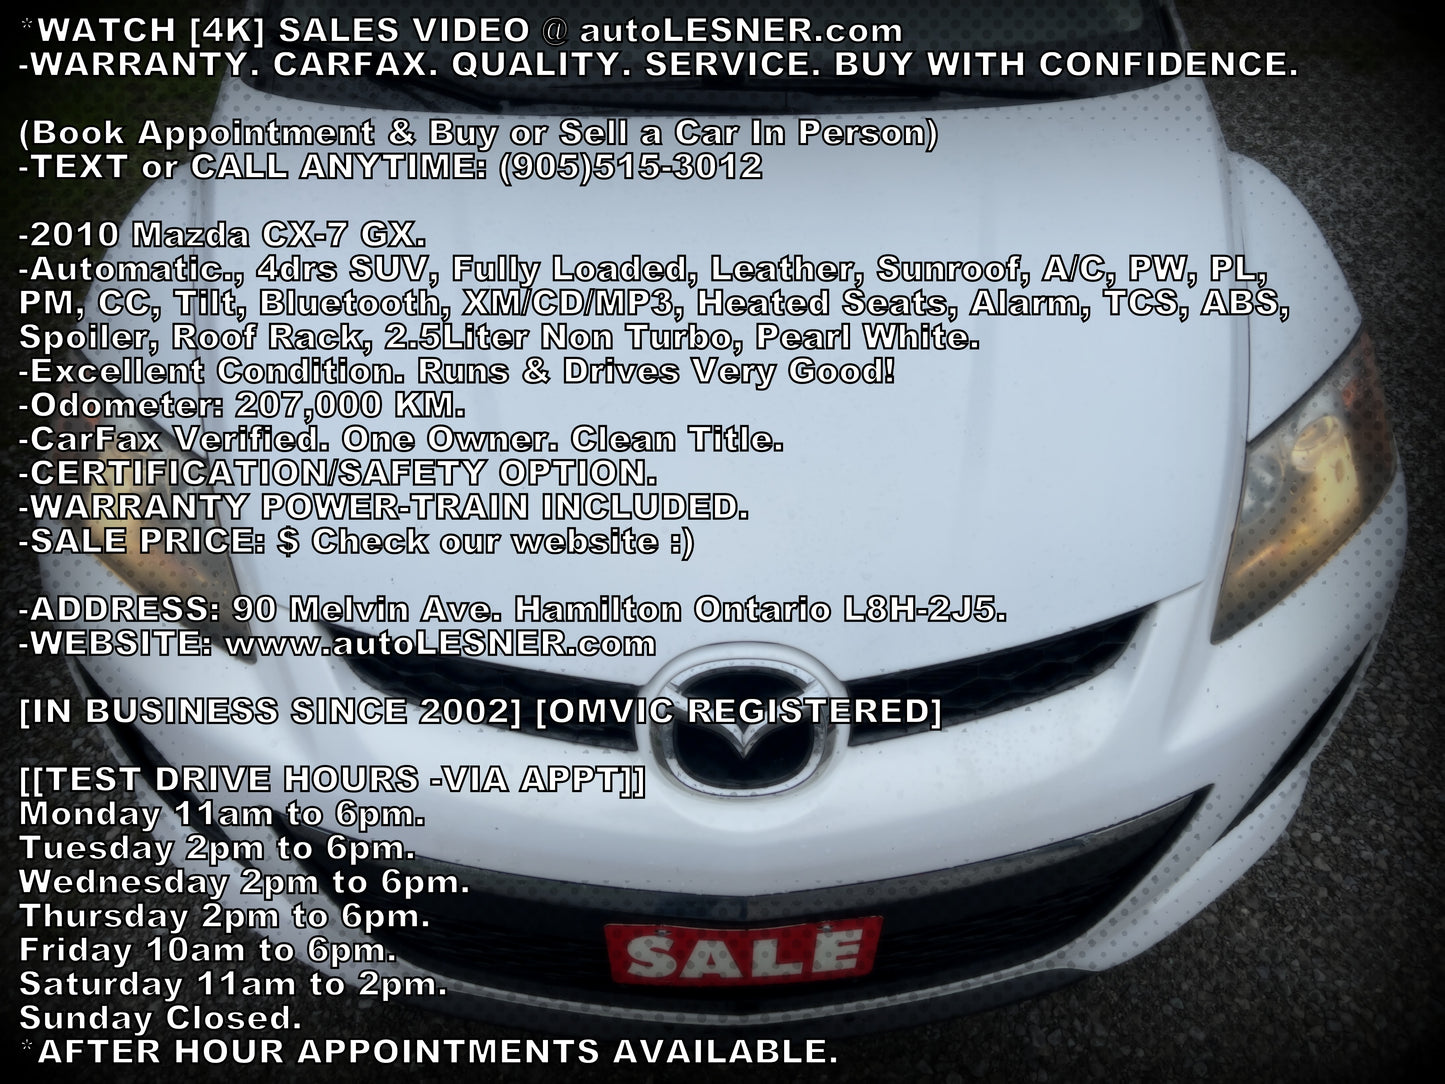 2010 Mazda CX-7 GX -Auto Fully Loaded 207,KM -Warranty!